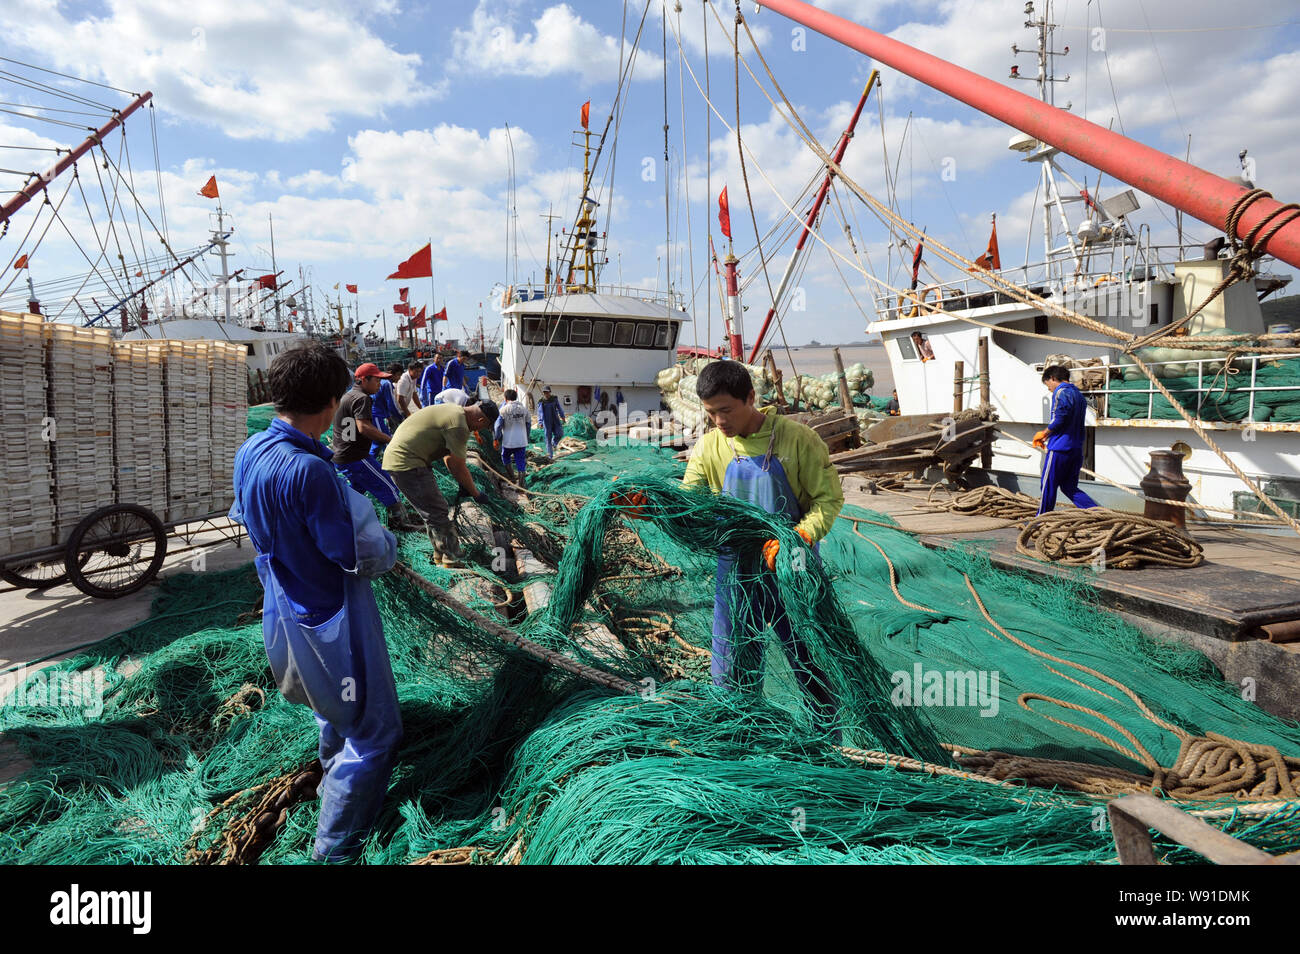 Chinesische Fischer aufräumen Netze an der Wuhan Hafen vor dem Taifun Fitow Angriff in Wuhan, China Zhejiang provinz, 4. Oktober 2013. Stockfoto